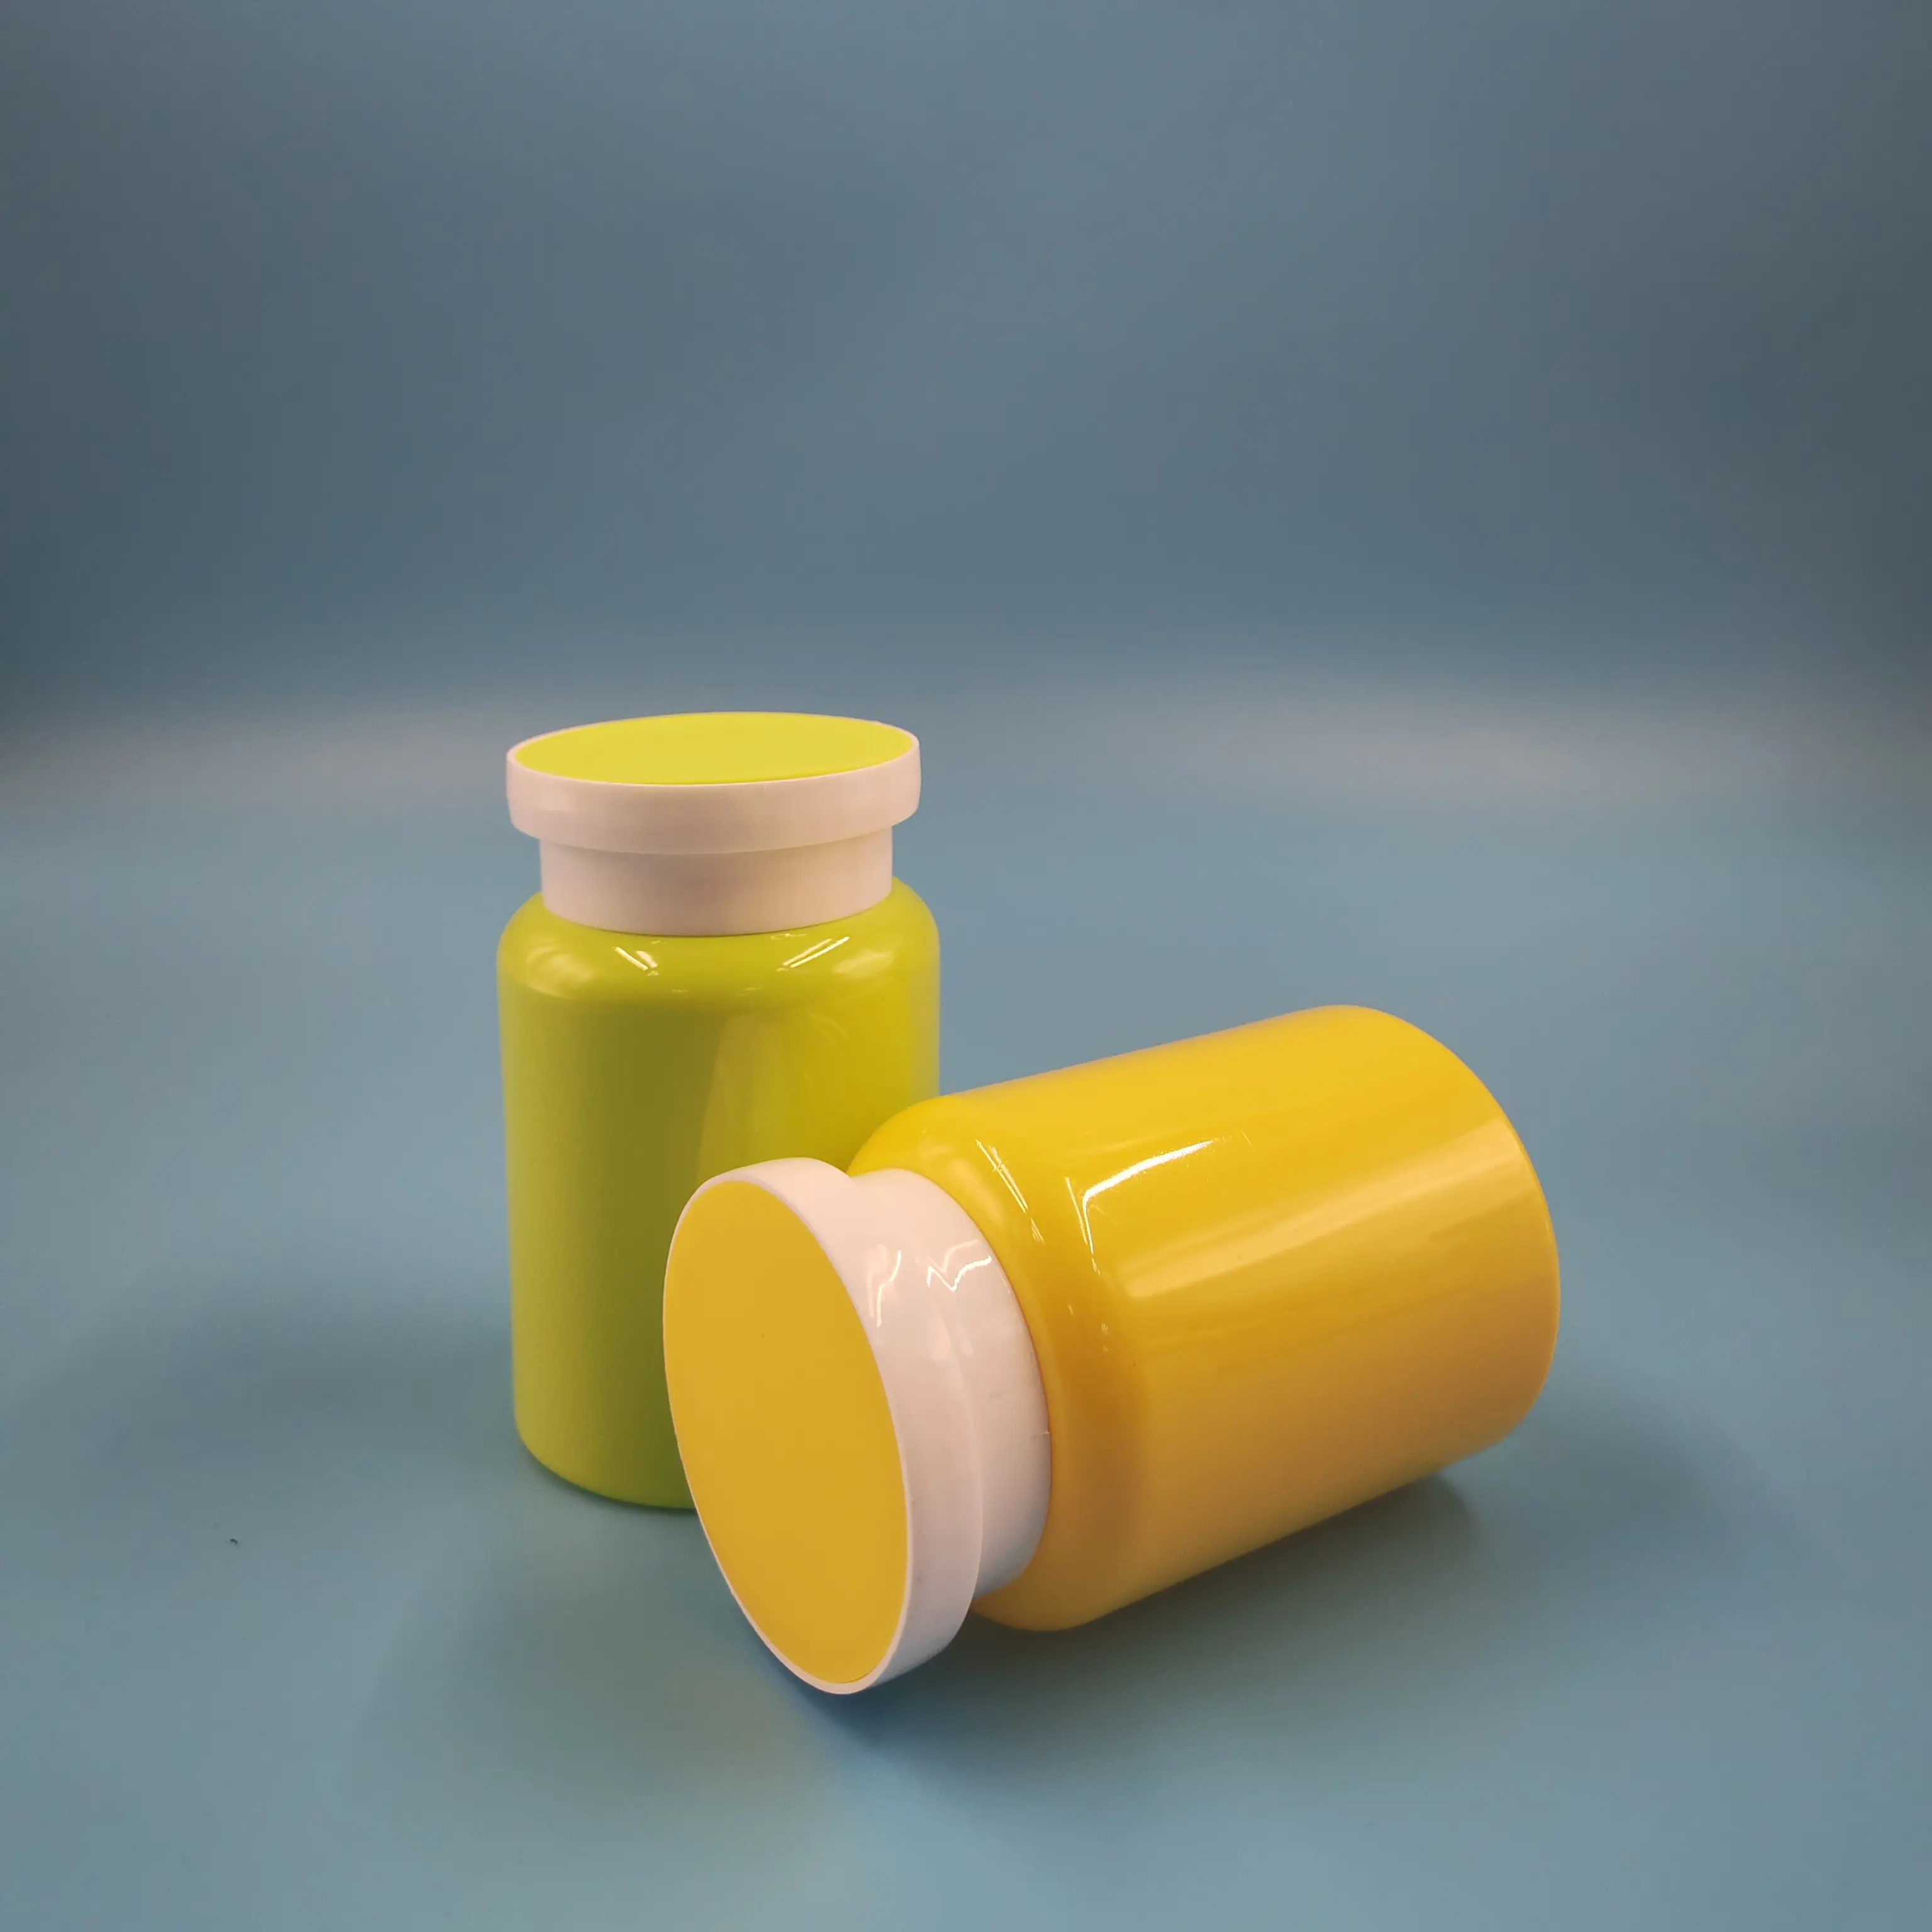 キャンディー/プロバイオティクス/健康製品に使用されるポータブル空のプラスチック175mlPETキャンディービタミン医療ボトル